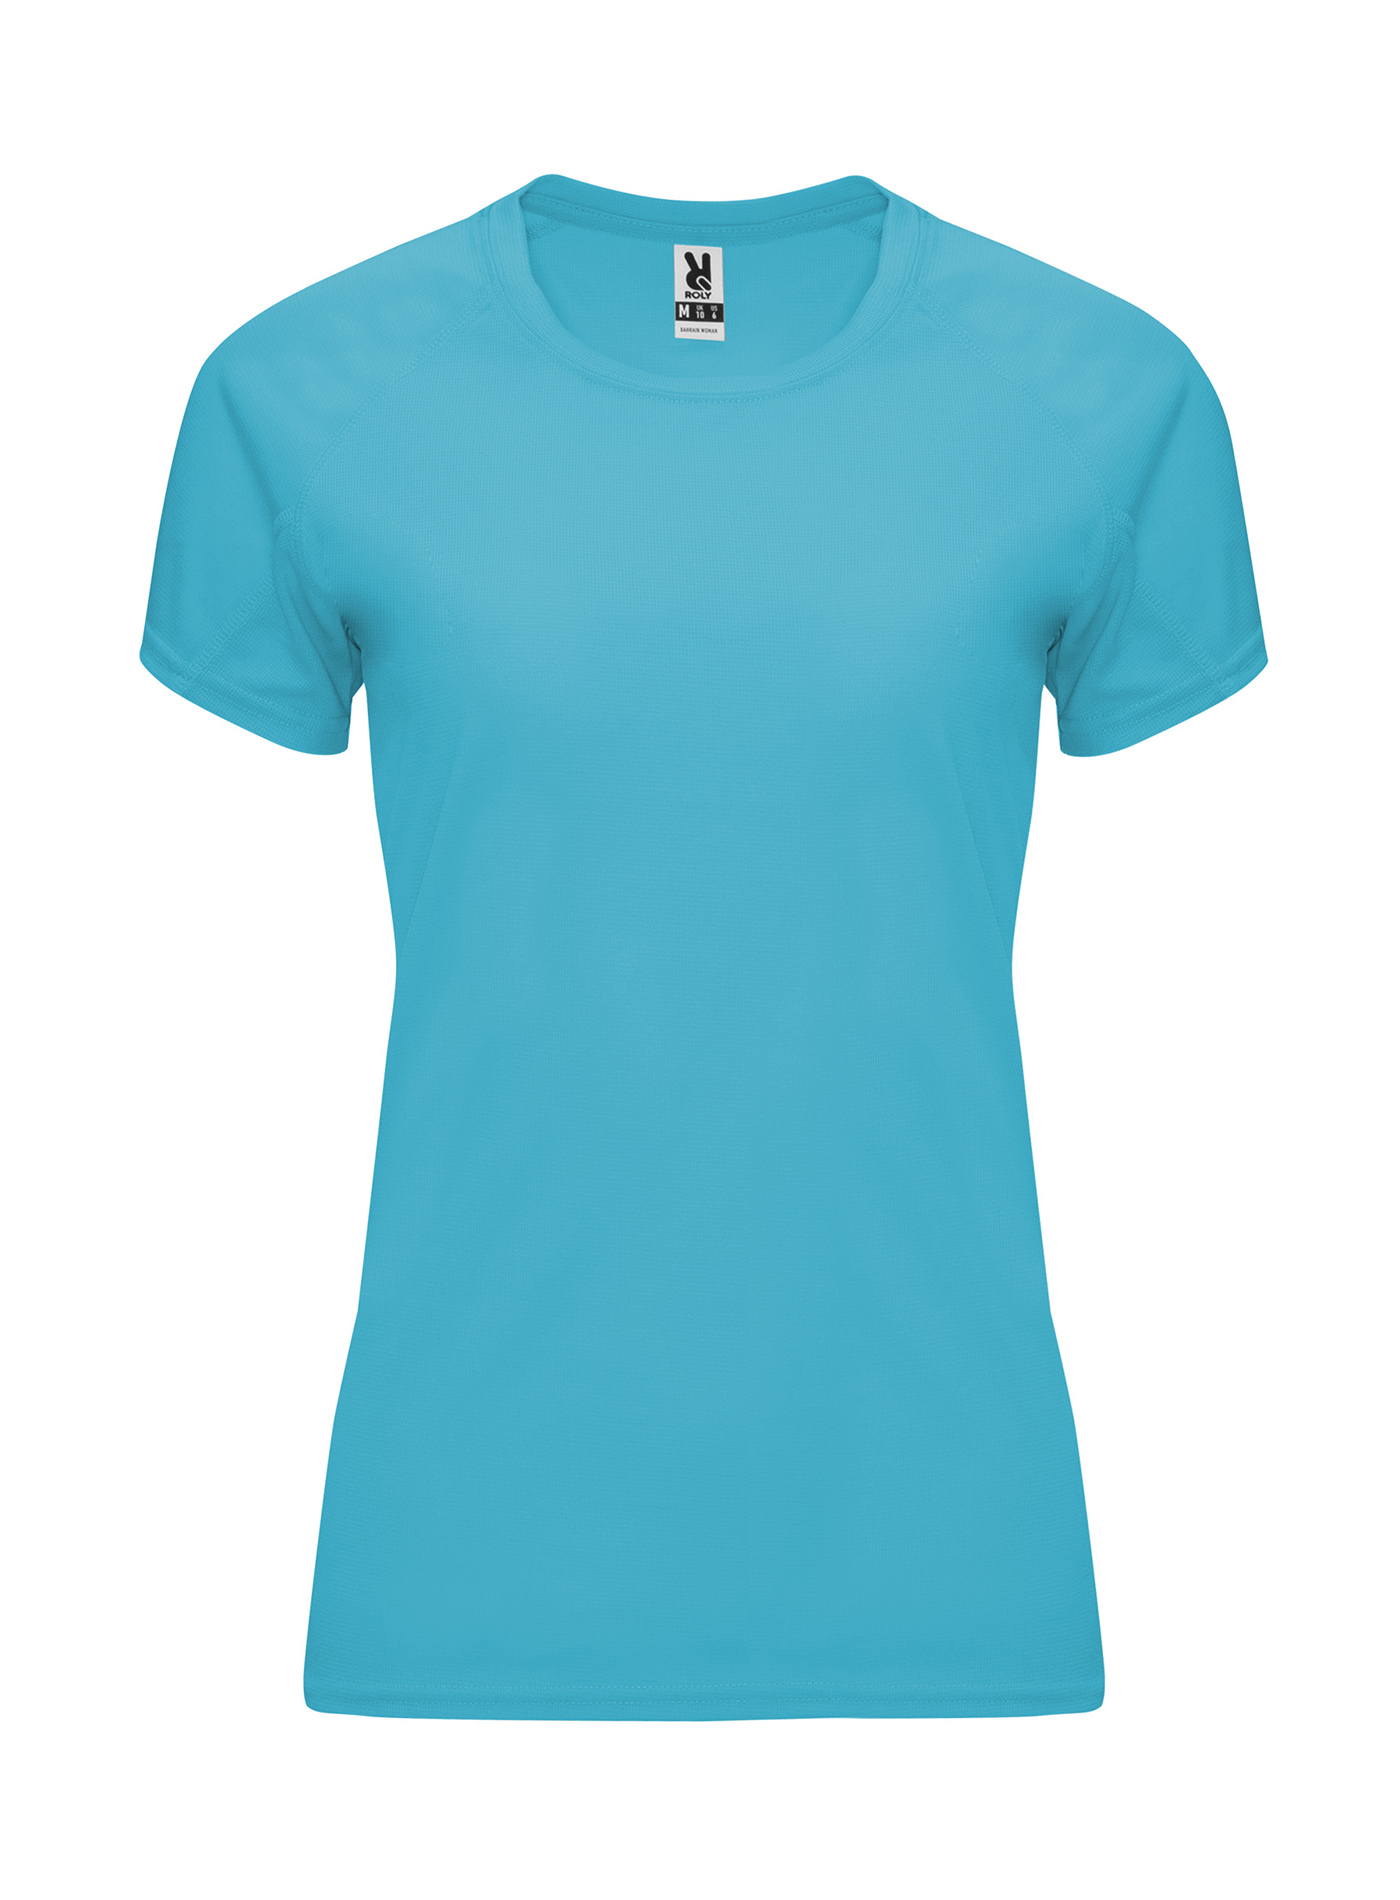 Dámské sportovní tričko Roly Bahrain - Tyrkysově modrá M